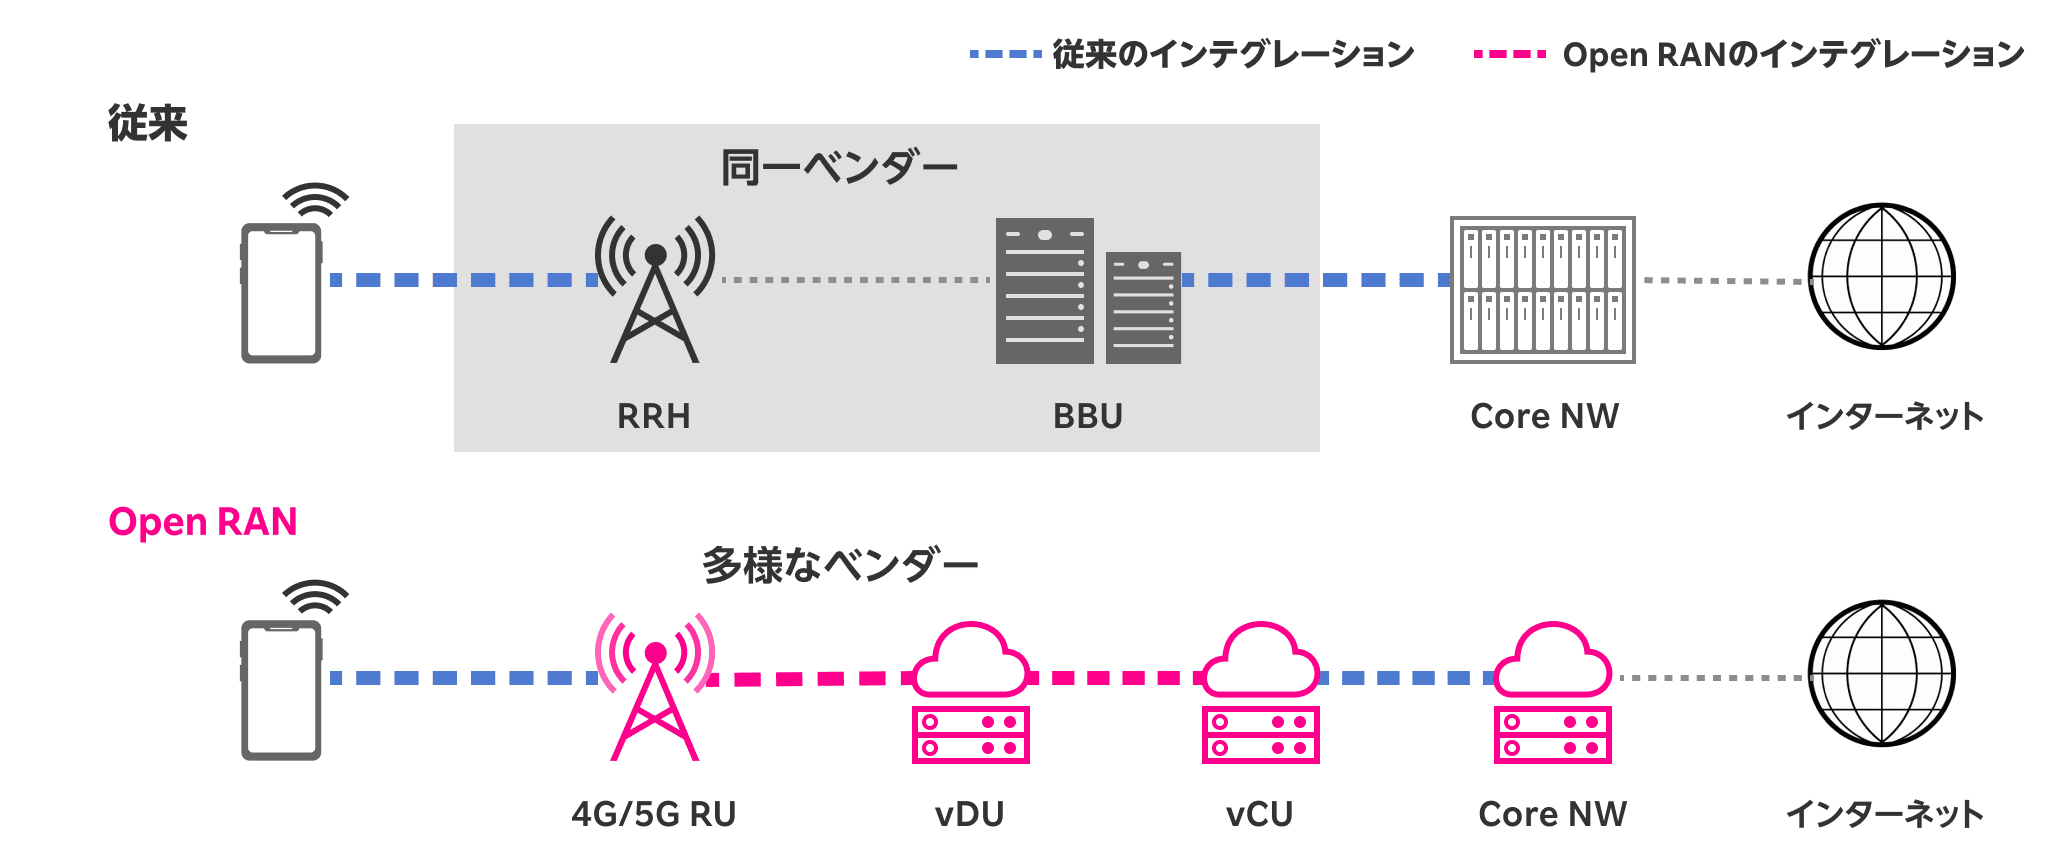 従来のインテグレーション、Open RANのインテグレーション。従来、スマートフォン、同一ベンダー（RRH、BBU）、Core NW、インターネット。Open RAN、スマートフォン、多様なベンダー（4G/5G RU、vDU、vCU）、Core NW、インターネット。